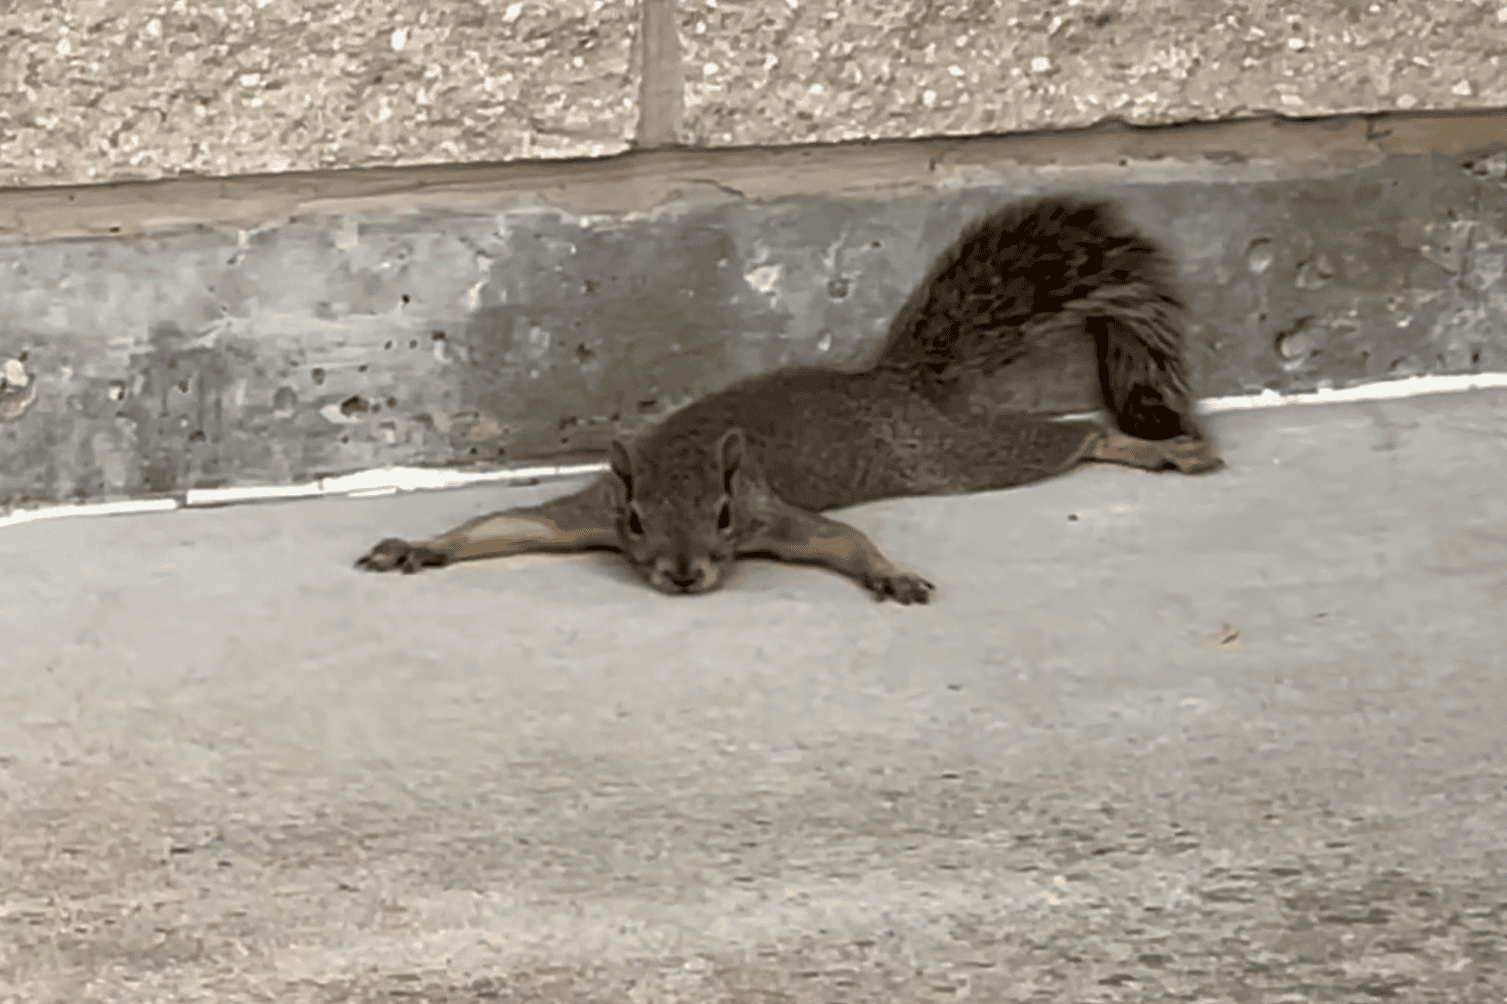 squirrels' belly-crawling